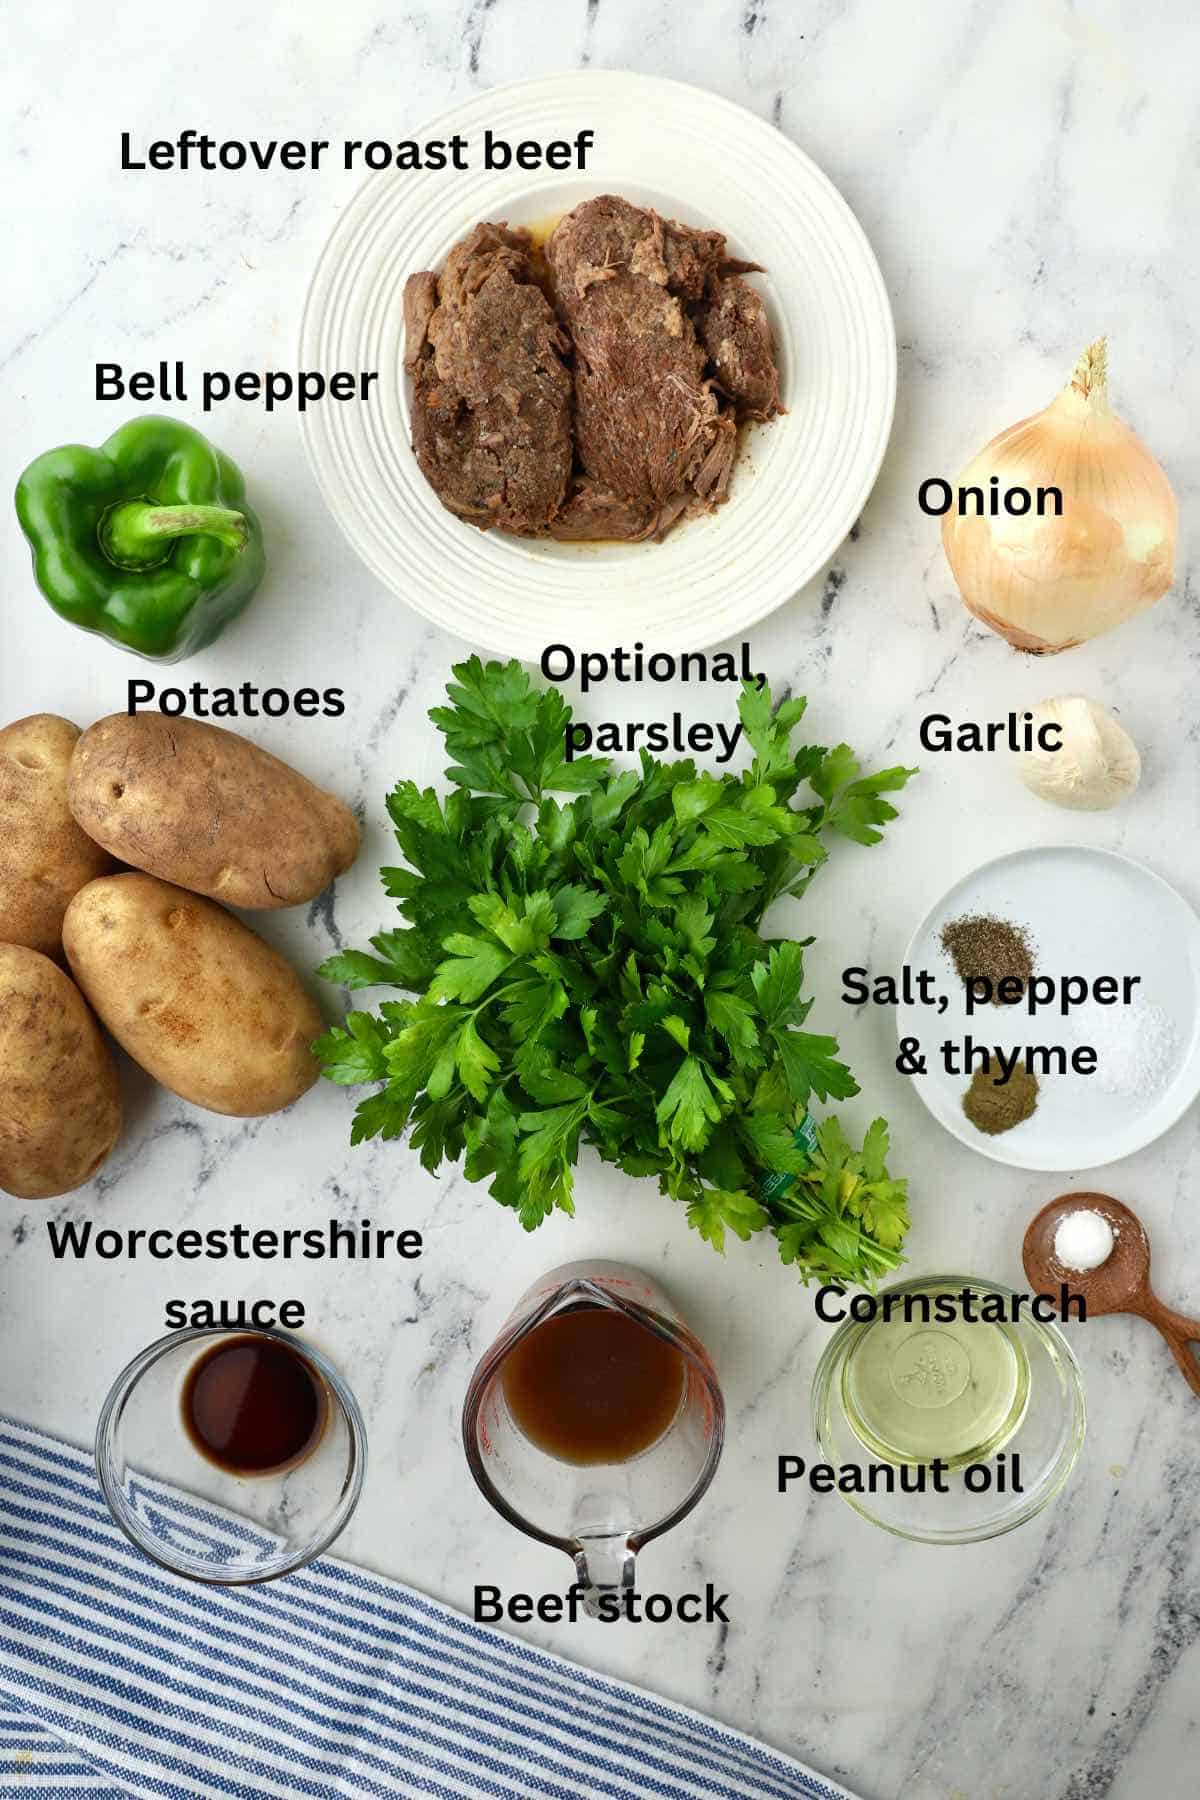 Ingredients for Roast Beef Hash including leftover roast beef, potatoes, and seasonings. 